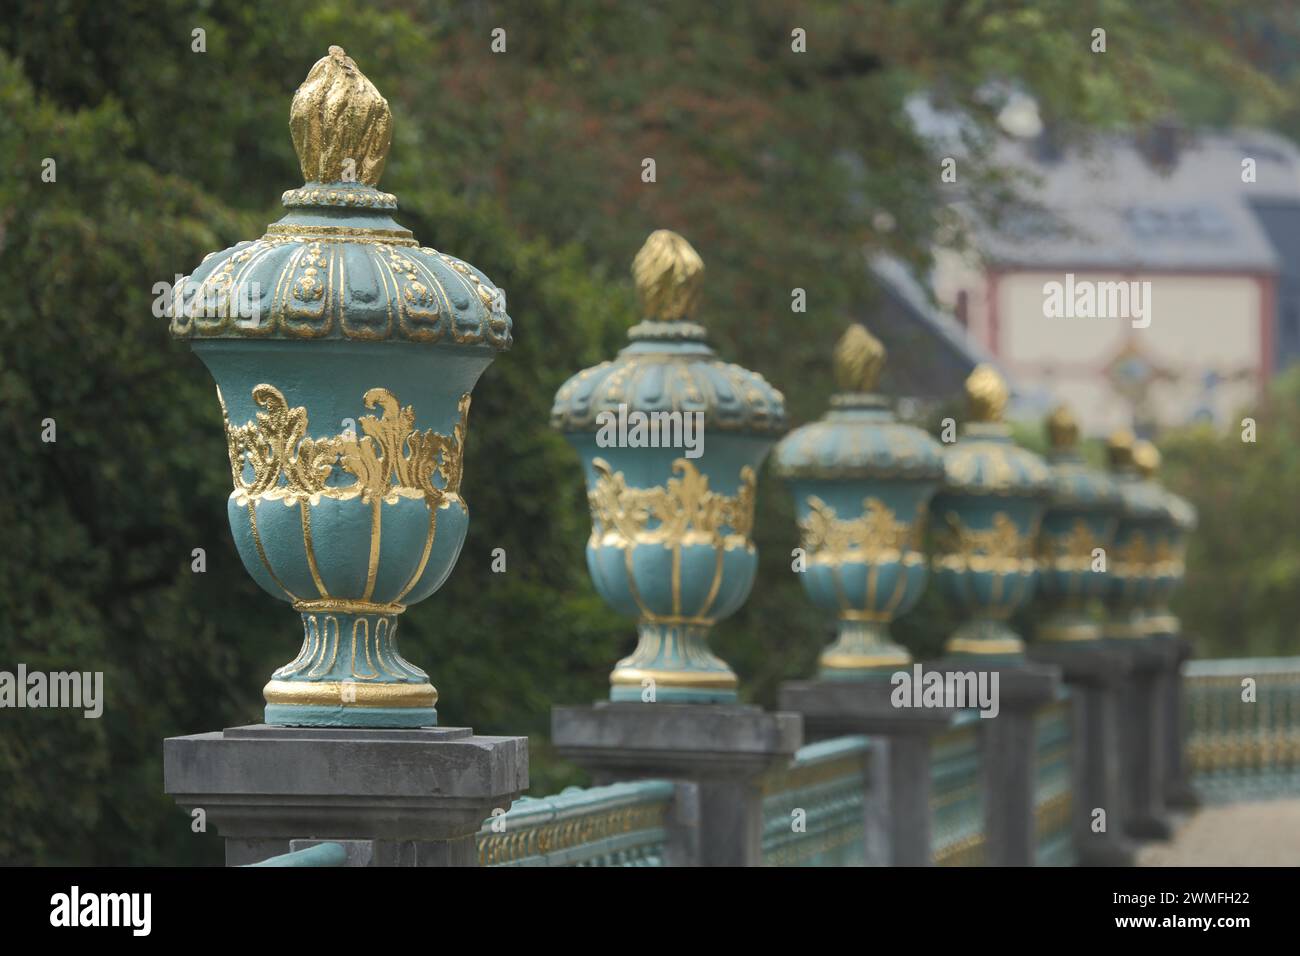 Balustrade with row of lidded vases, lidded vase, vase, balustrade, golden, depth of field, blur, castle garden, Weilburg, Taunus, Hesse, Germany Stock Photo